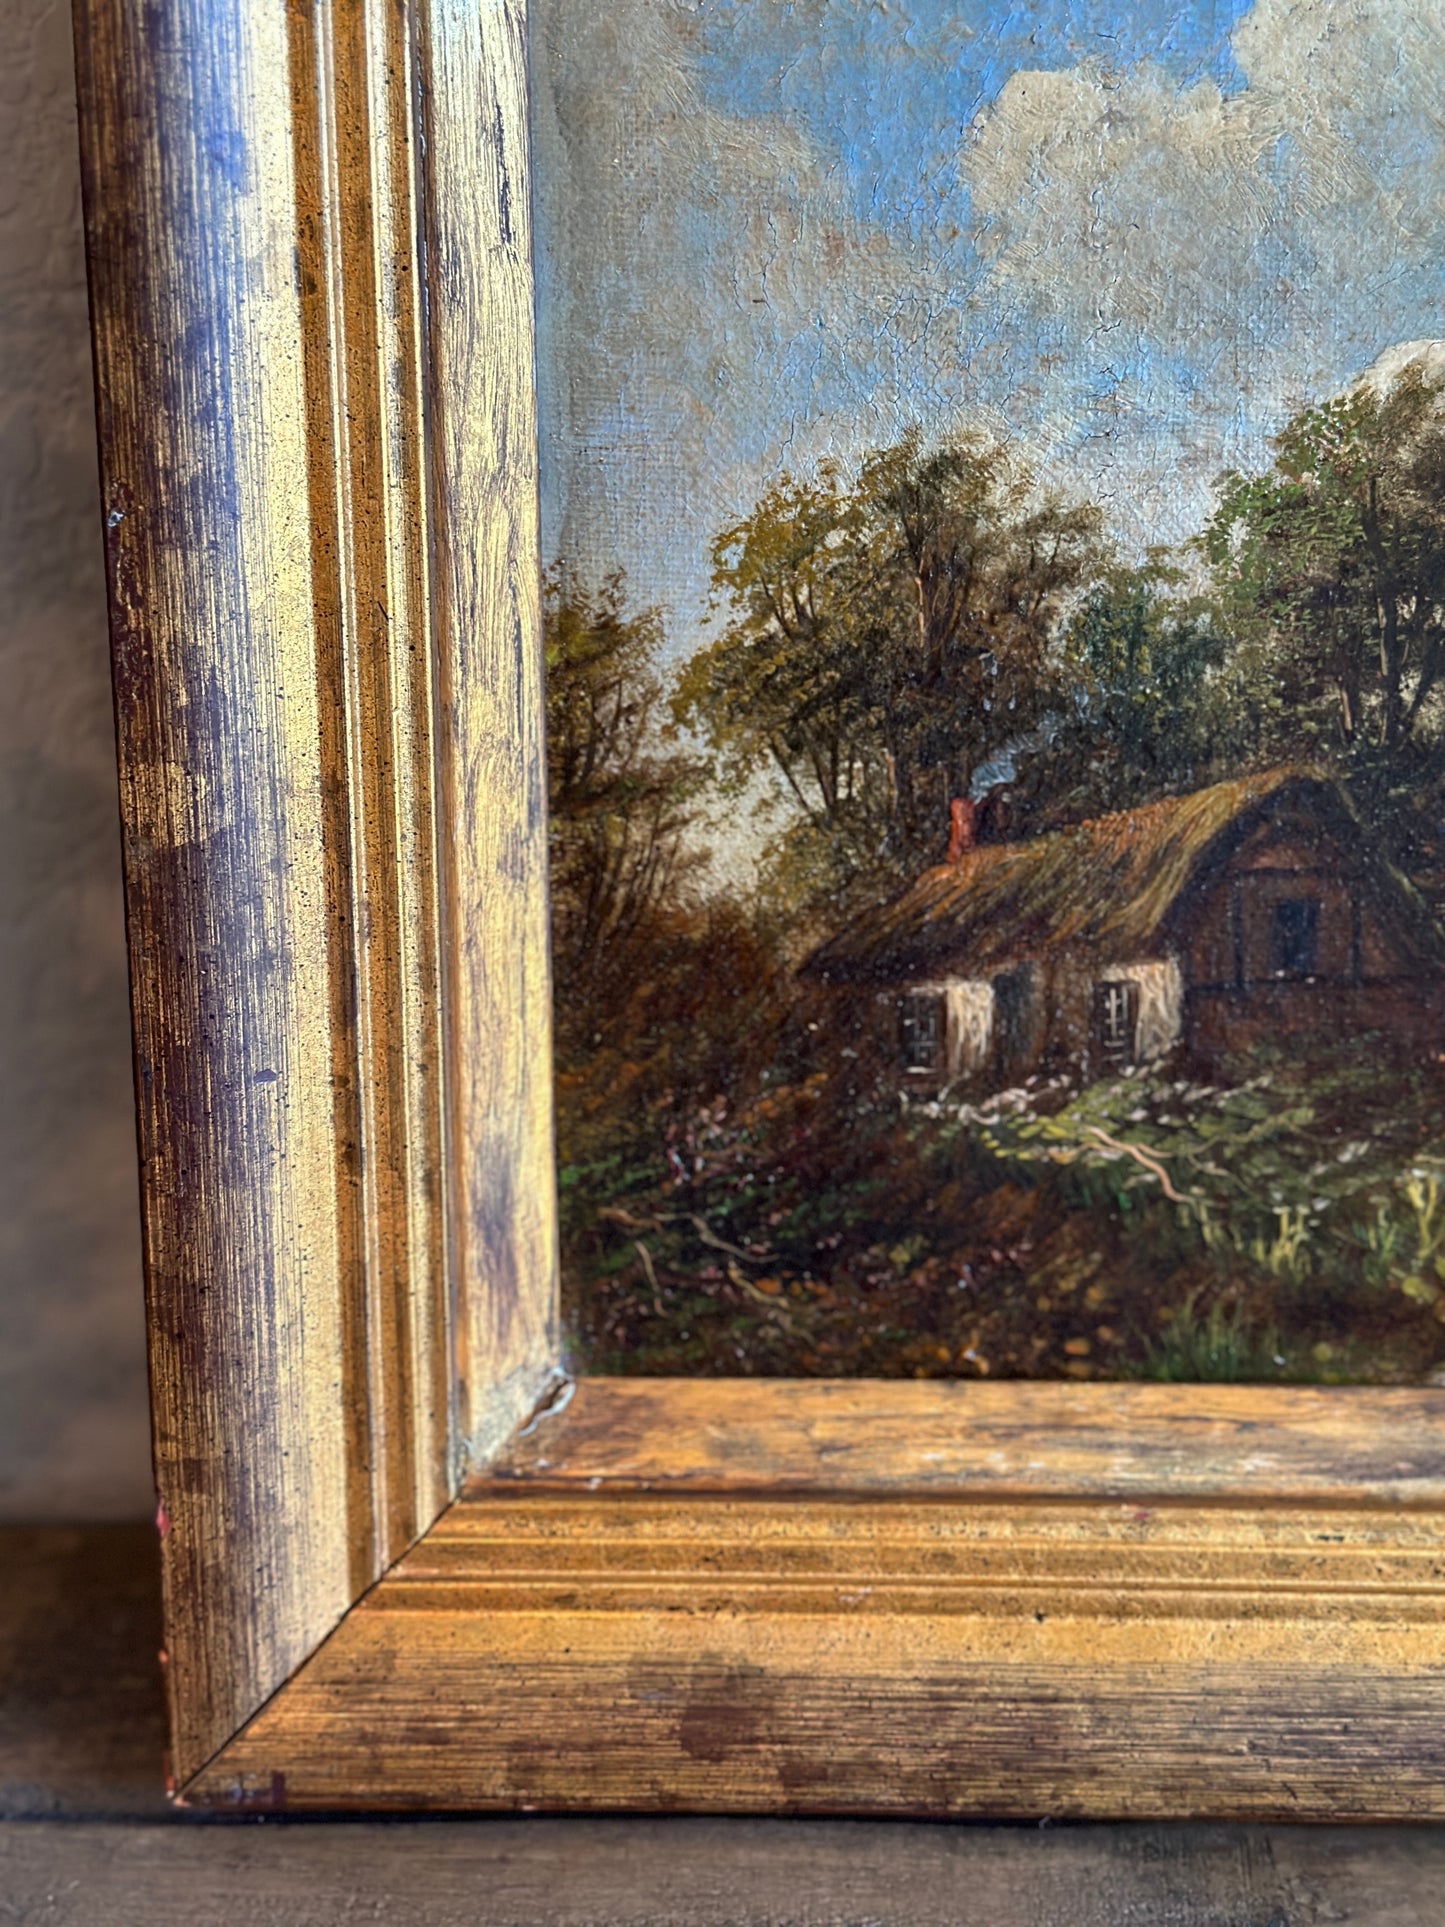 Original 19th c. Antique Oil Painting, Norwich School Landscape